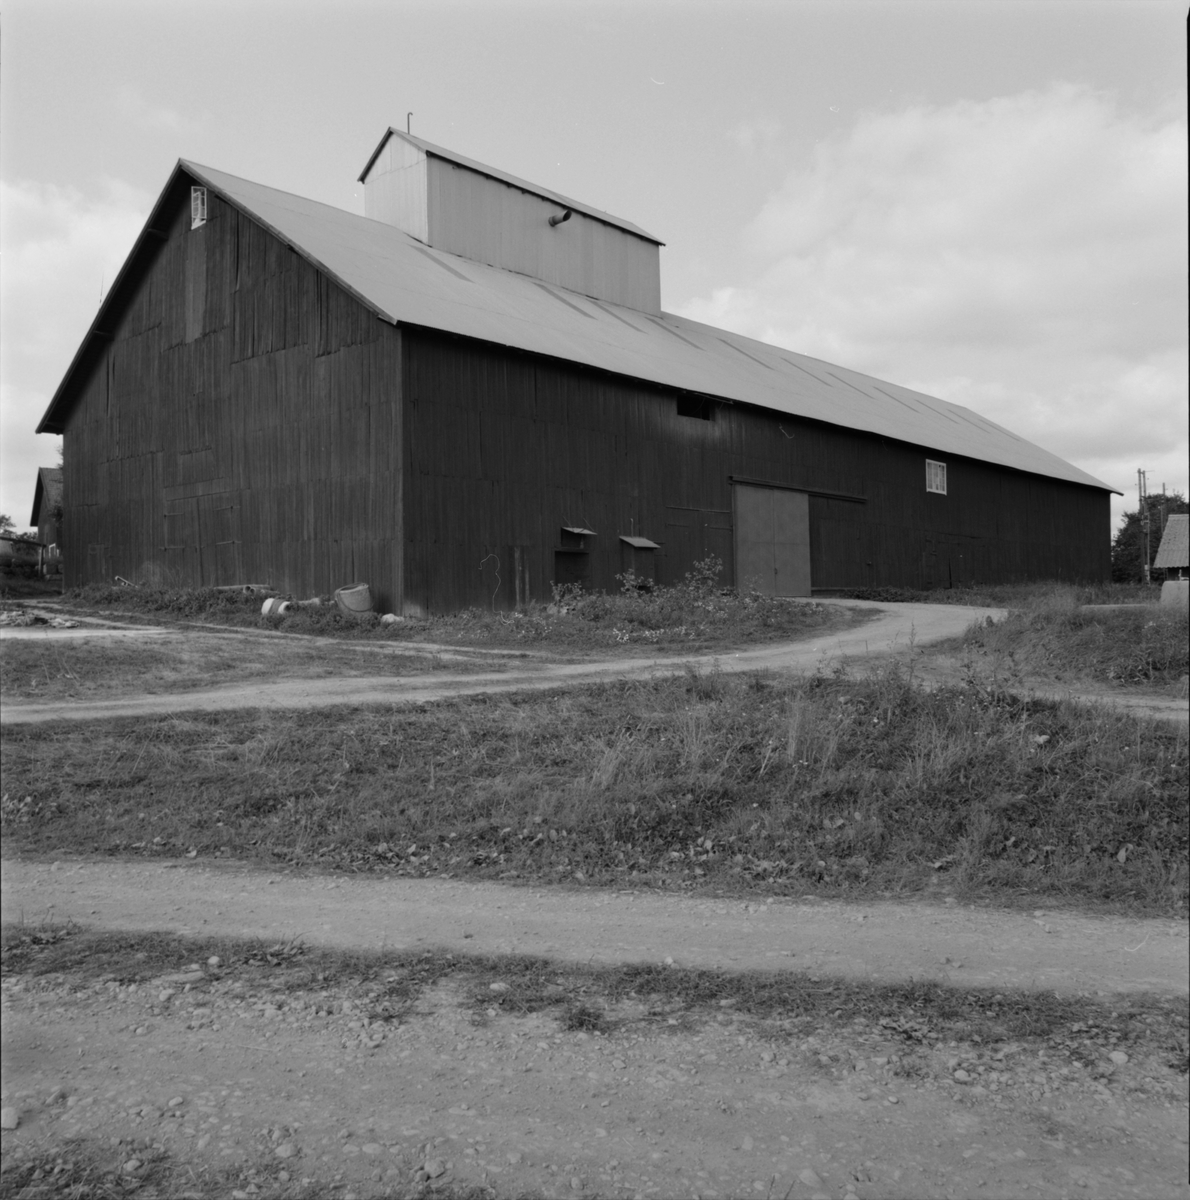 I logen är spannmålstorken inrymd, Hacksta gård, Enköpings-Näs socken, Uppland september 1981